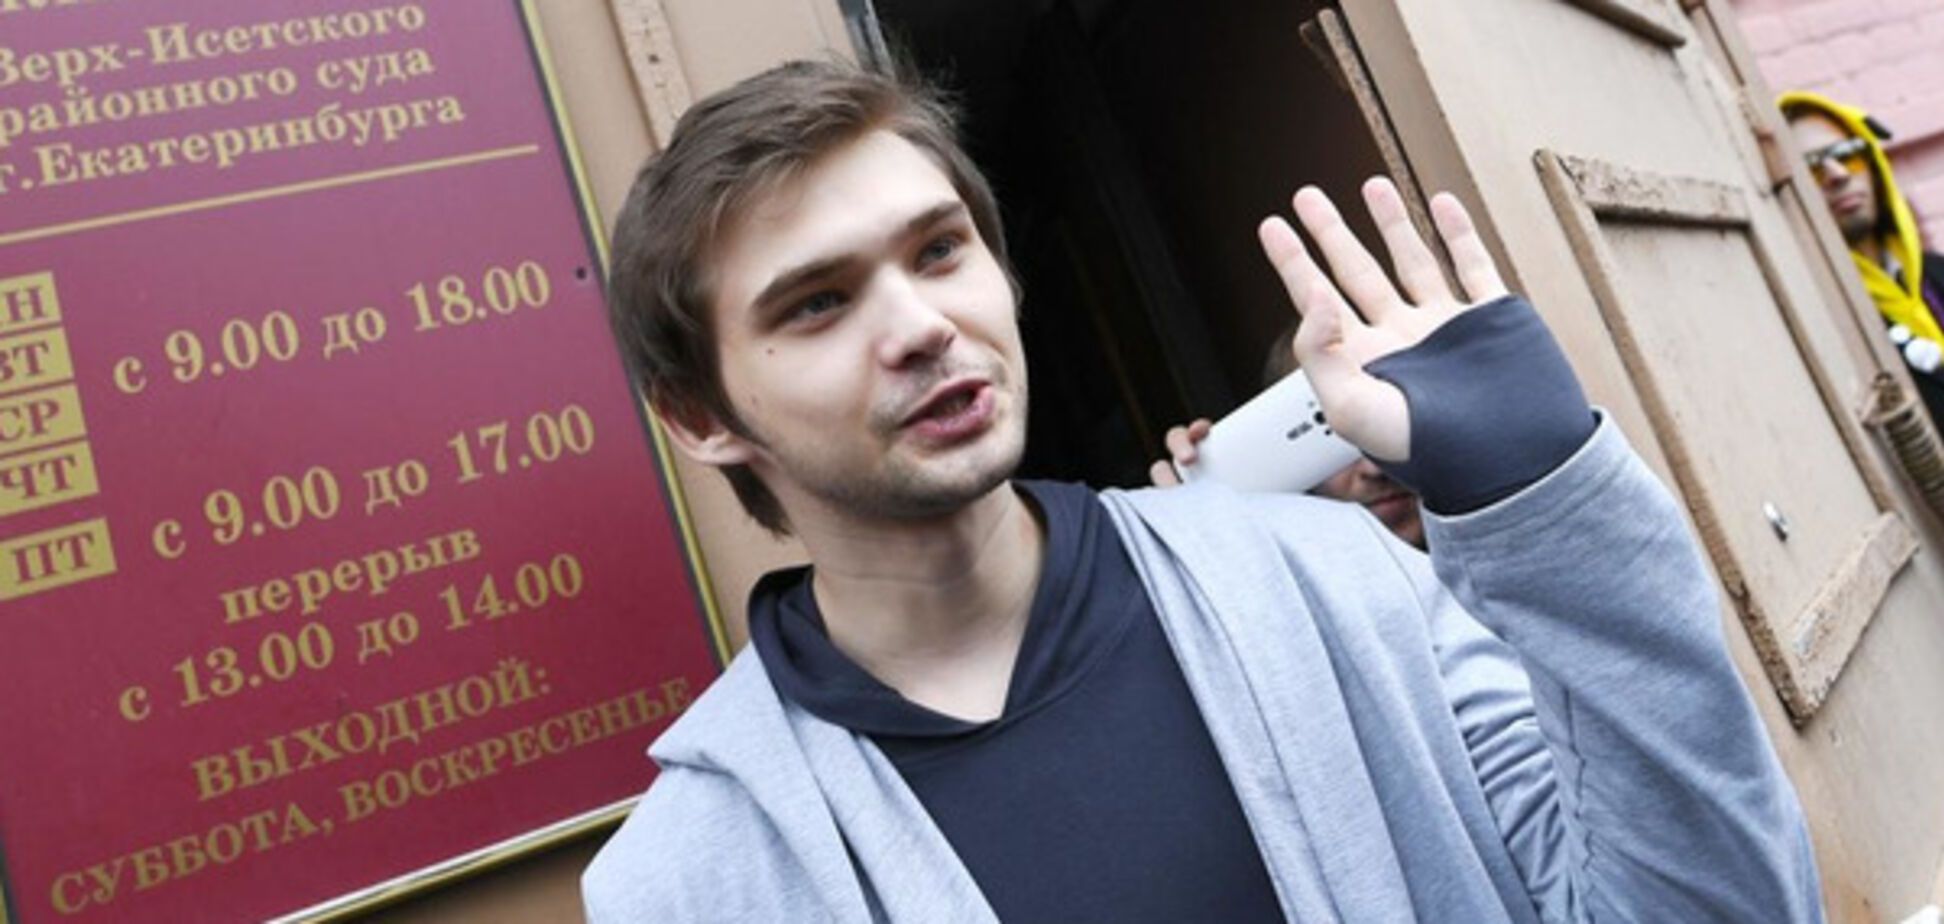 Блогера Руслана Соколовского приговорили к условному сроку за ловлю покемонов в храме